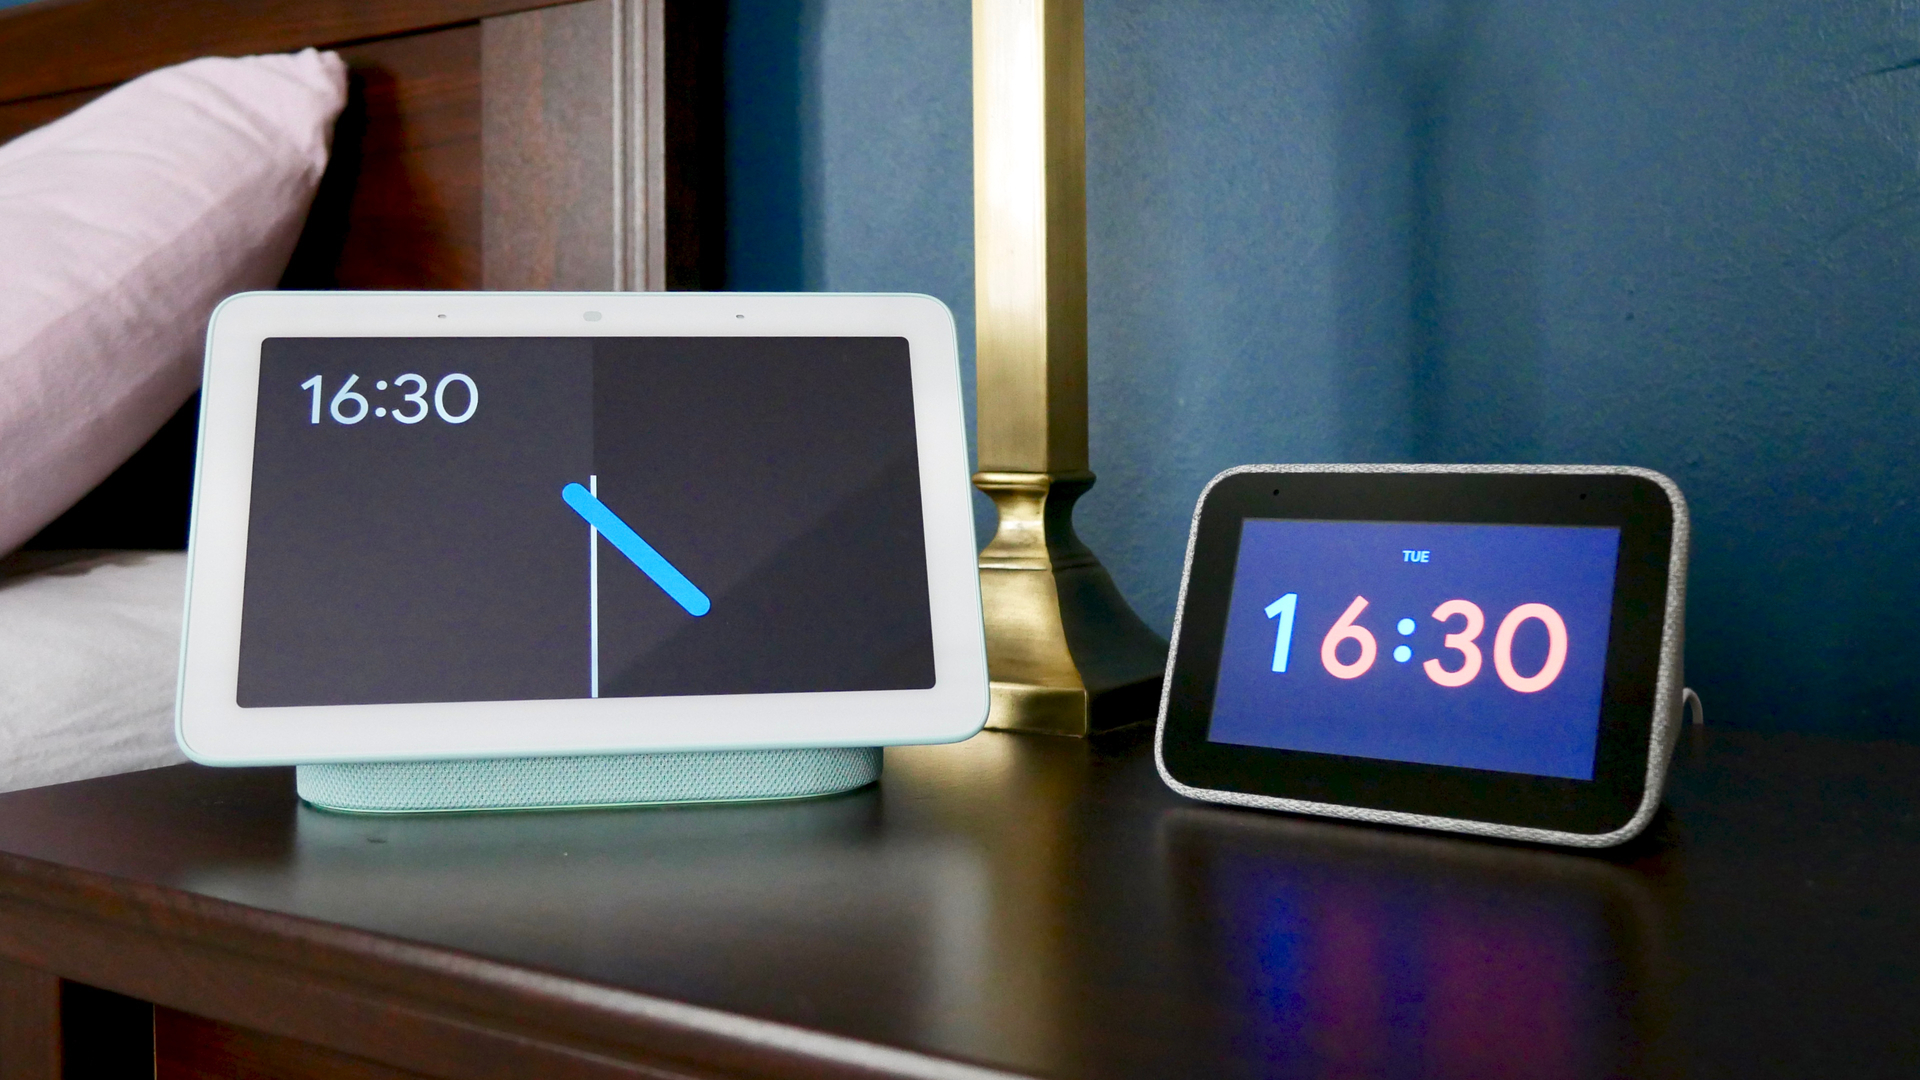 Lenovo Smart Clock vs Google Nest Hub: Which is better for the bedroom?